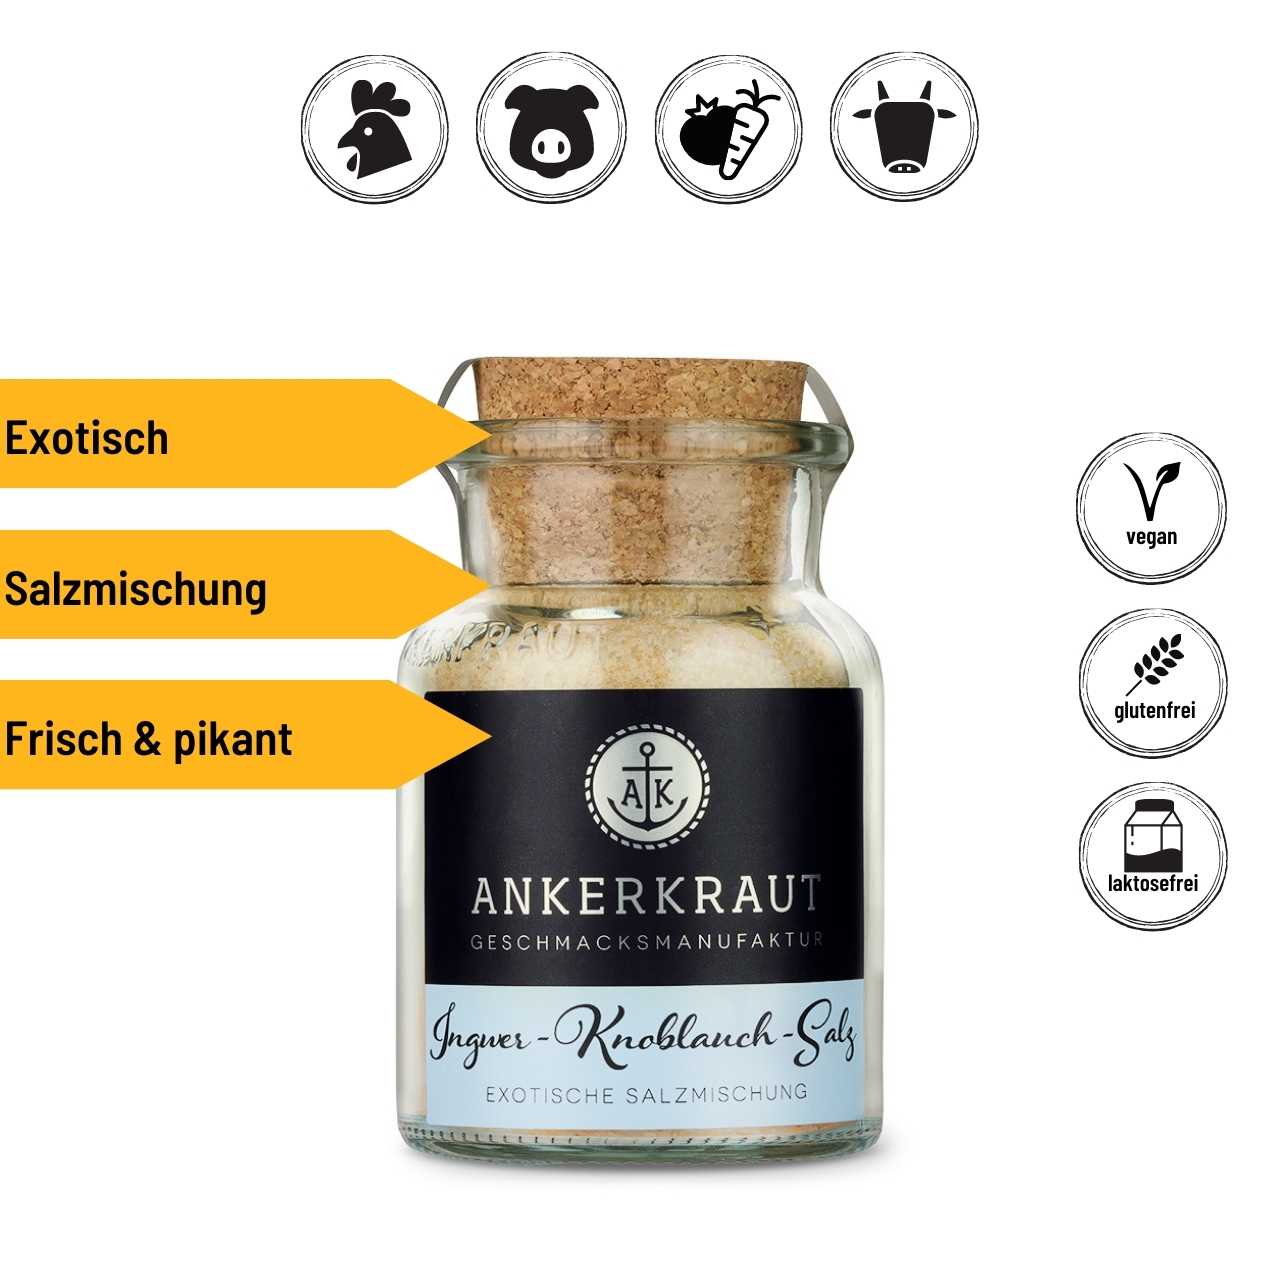 Ankerkraut Ingwer-Knoblauch-Salz